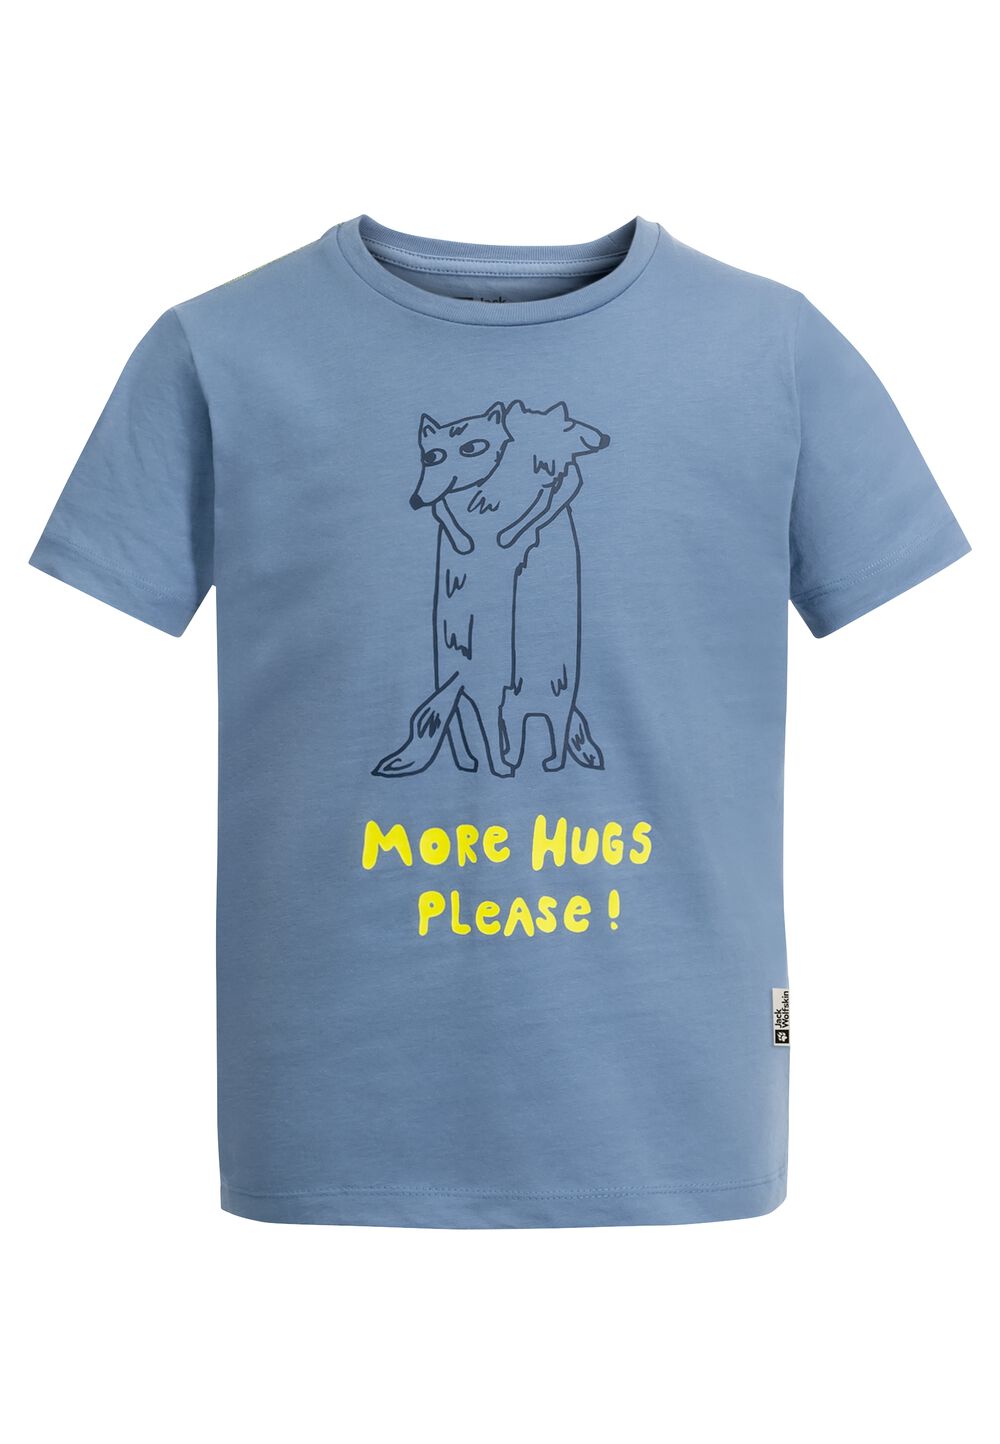 Jack Wolfskin More Hugs T-Shirt Kids T-shirt van biologisch katoen kinderen 128 ele tal blue ele tal blue